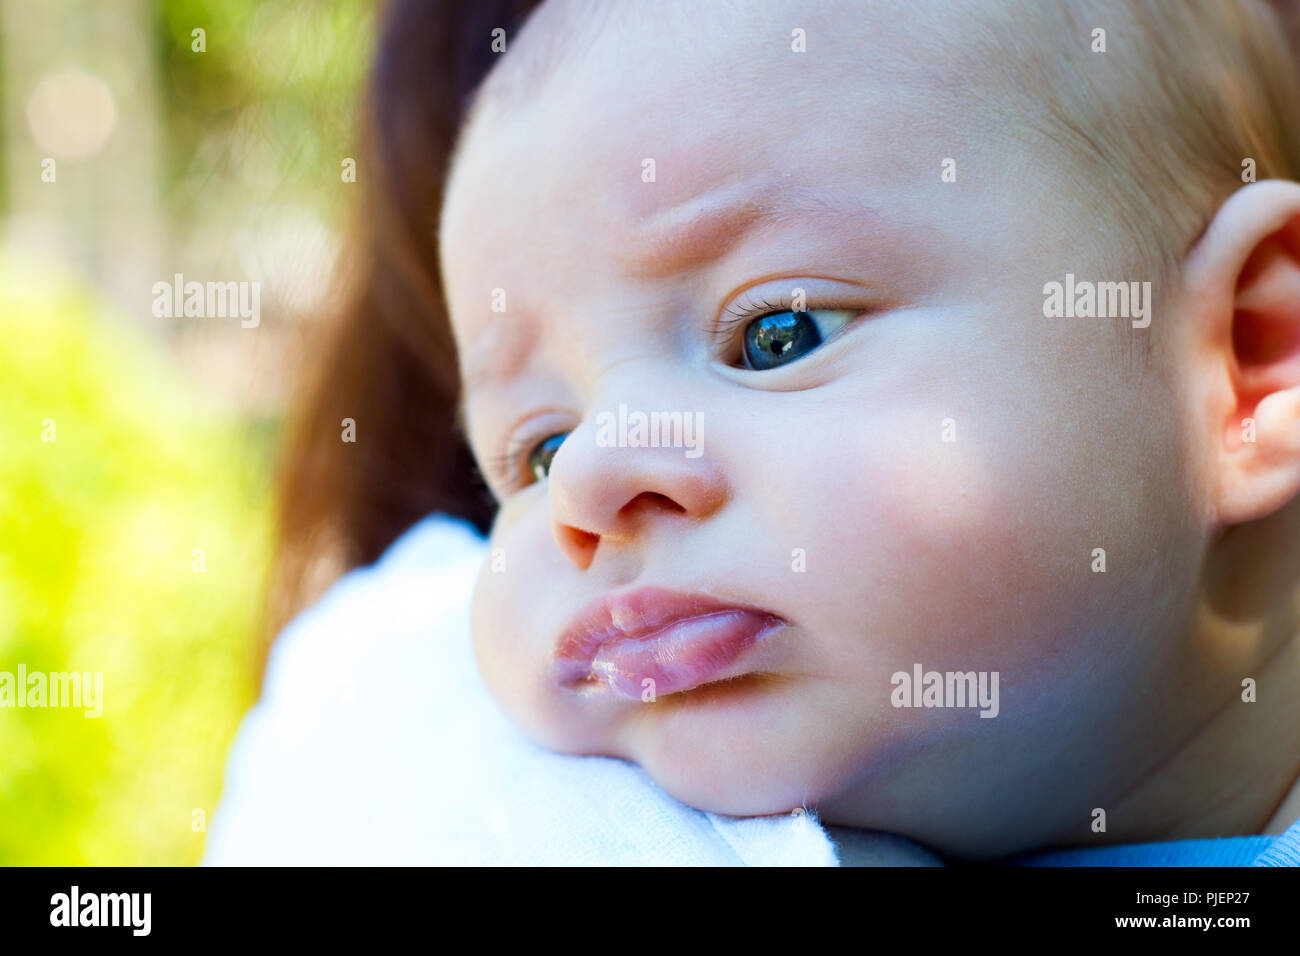 Cute little baby resting head sur le bras de mère, belle enfant avec les yeux bleu-vert, portrait de l'éructation infantile sur l'épaule de maman Banque D'Images